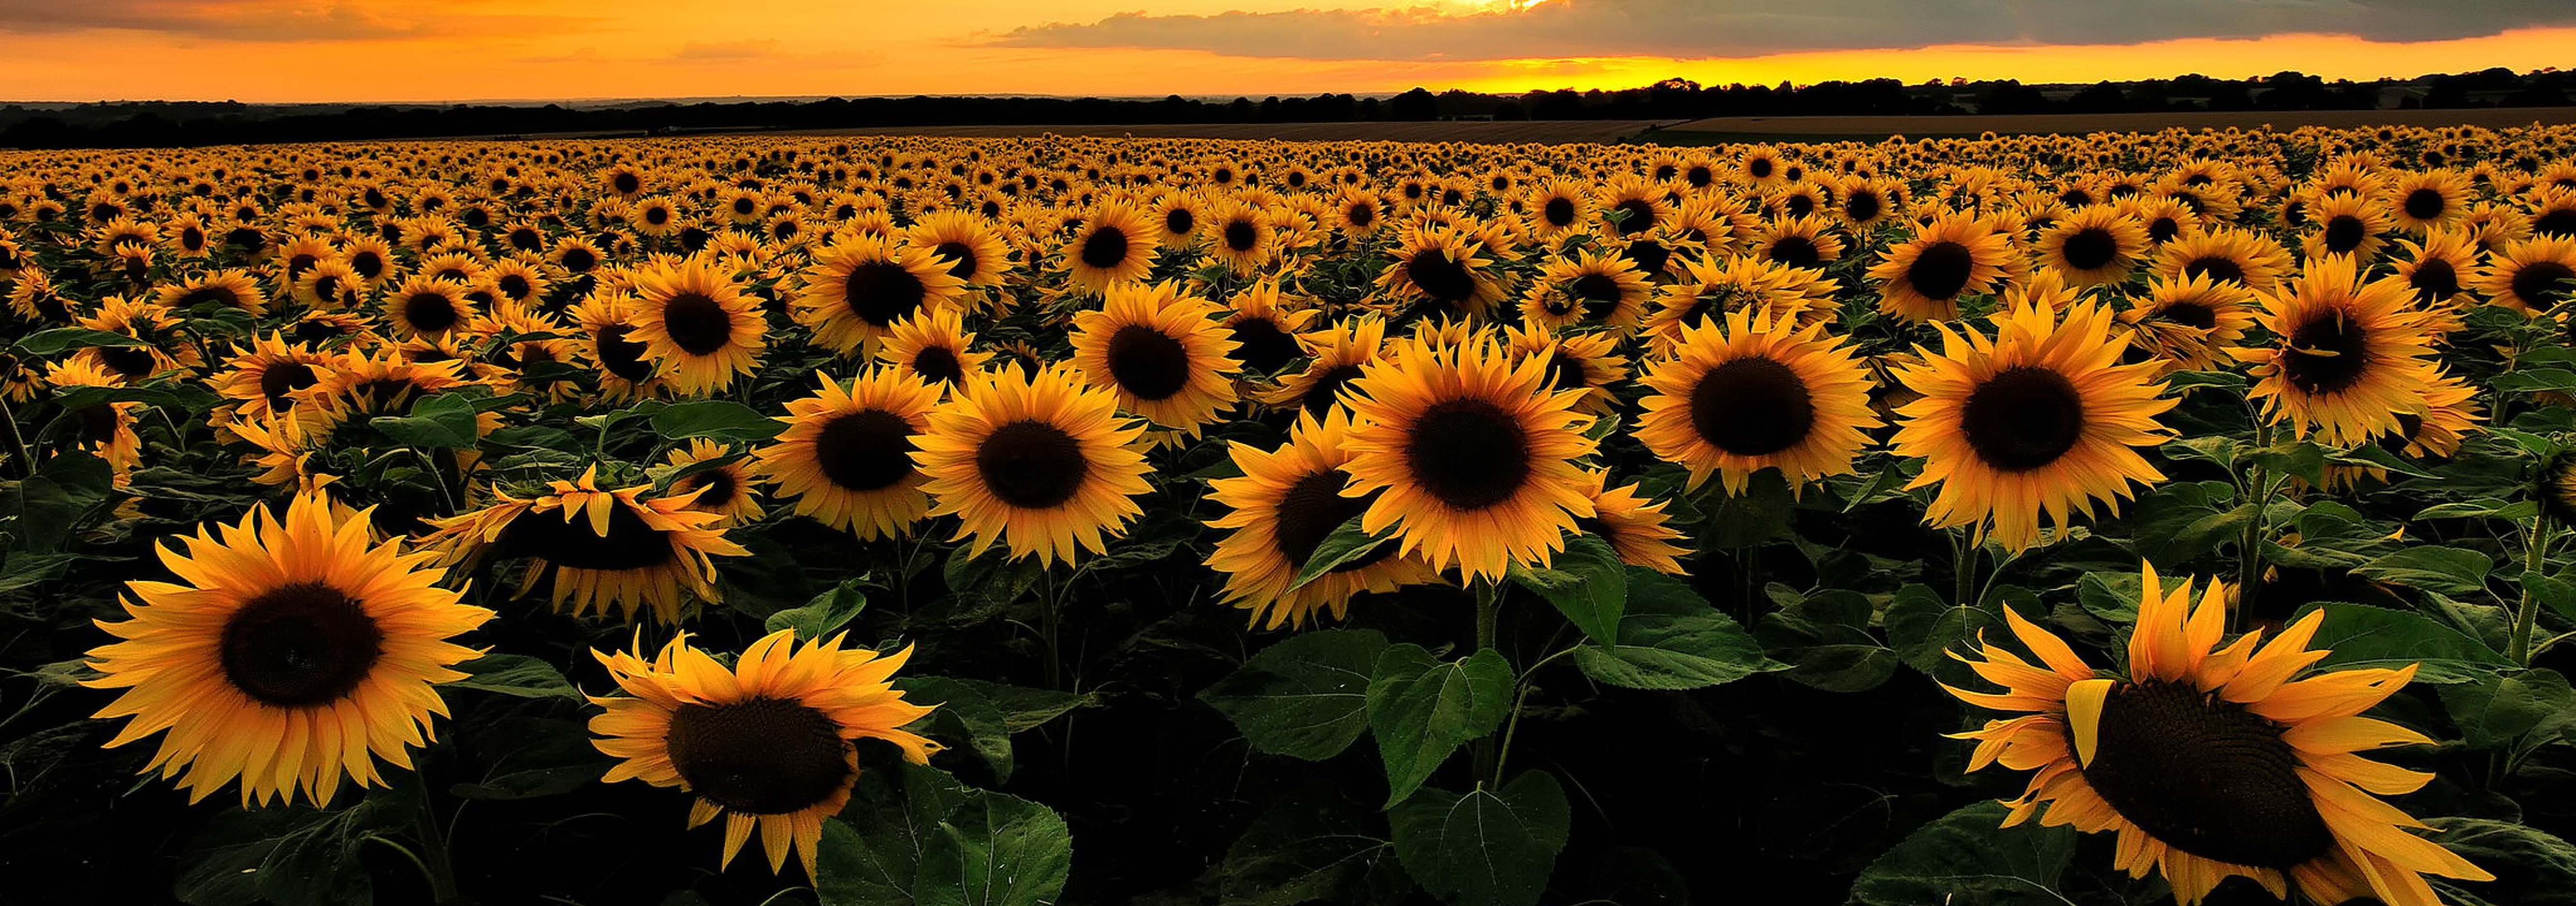 sunflower-category.jpg